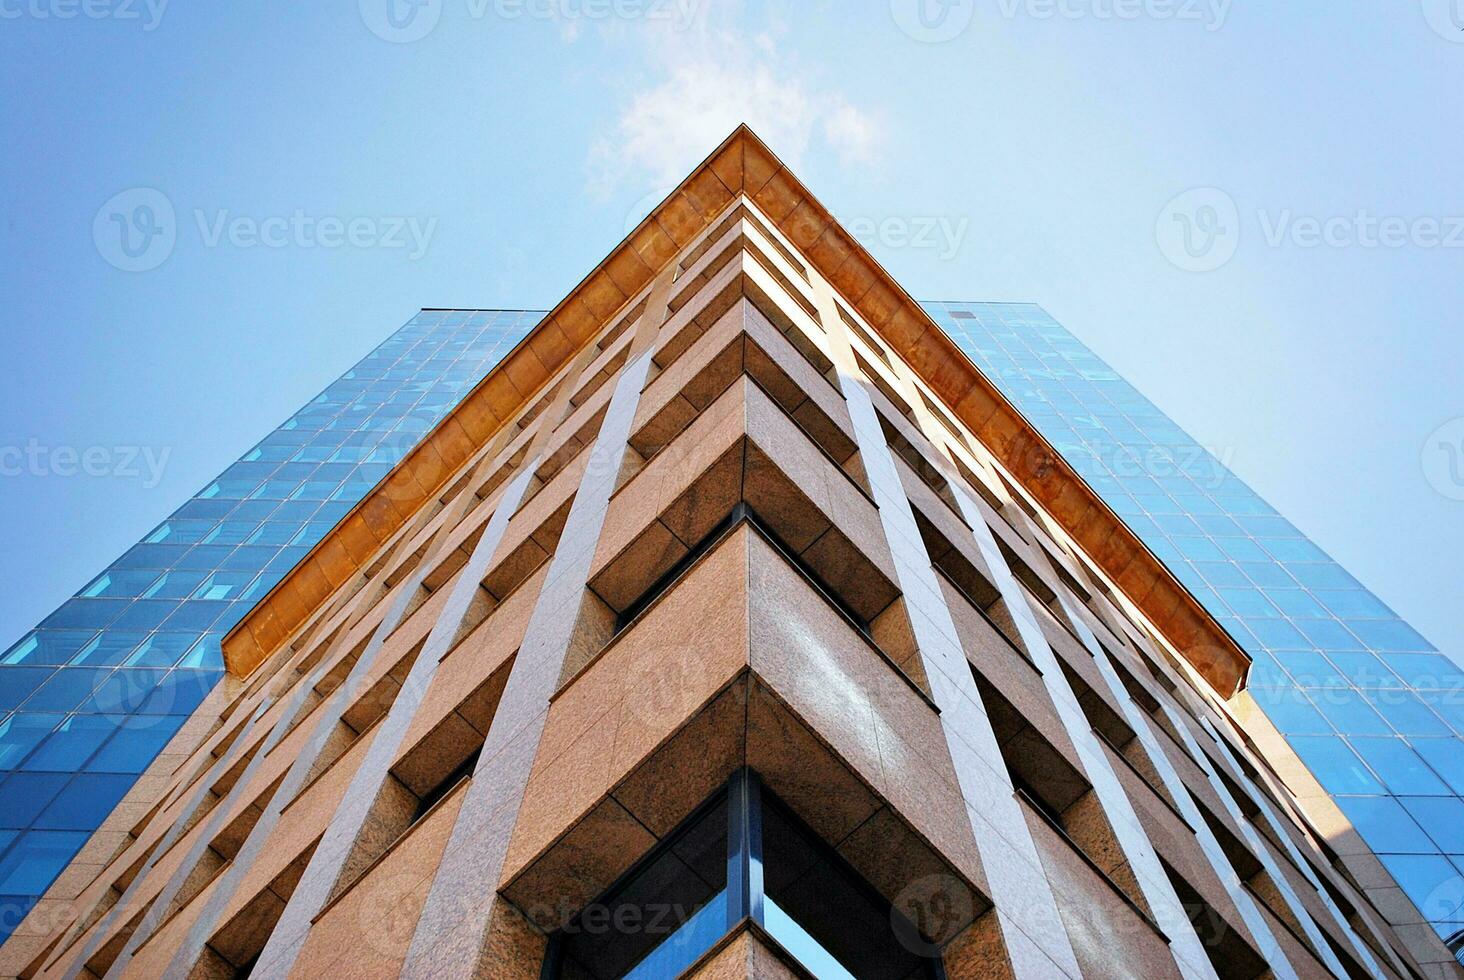 strukturell glas vägg reflekterande blå himmel. abstrakt modern arkitektur fragment. foto